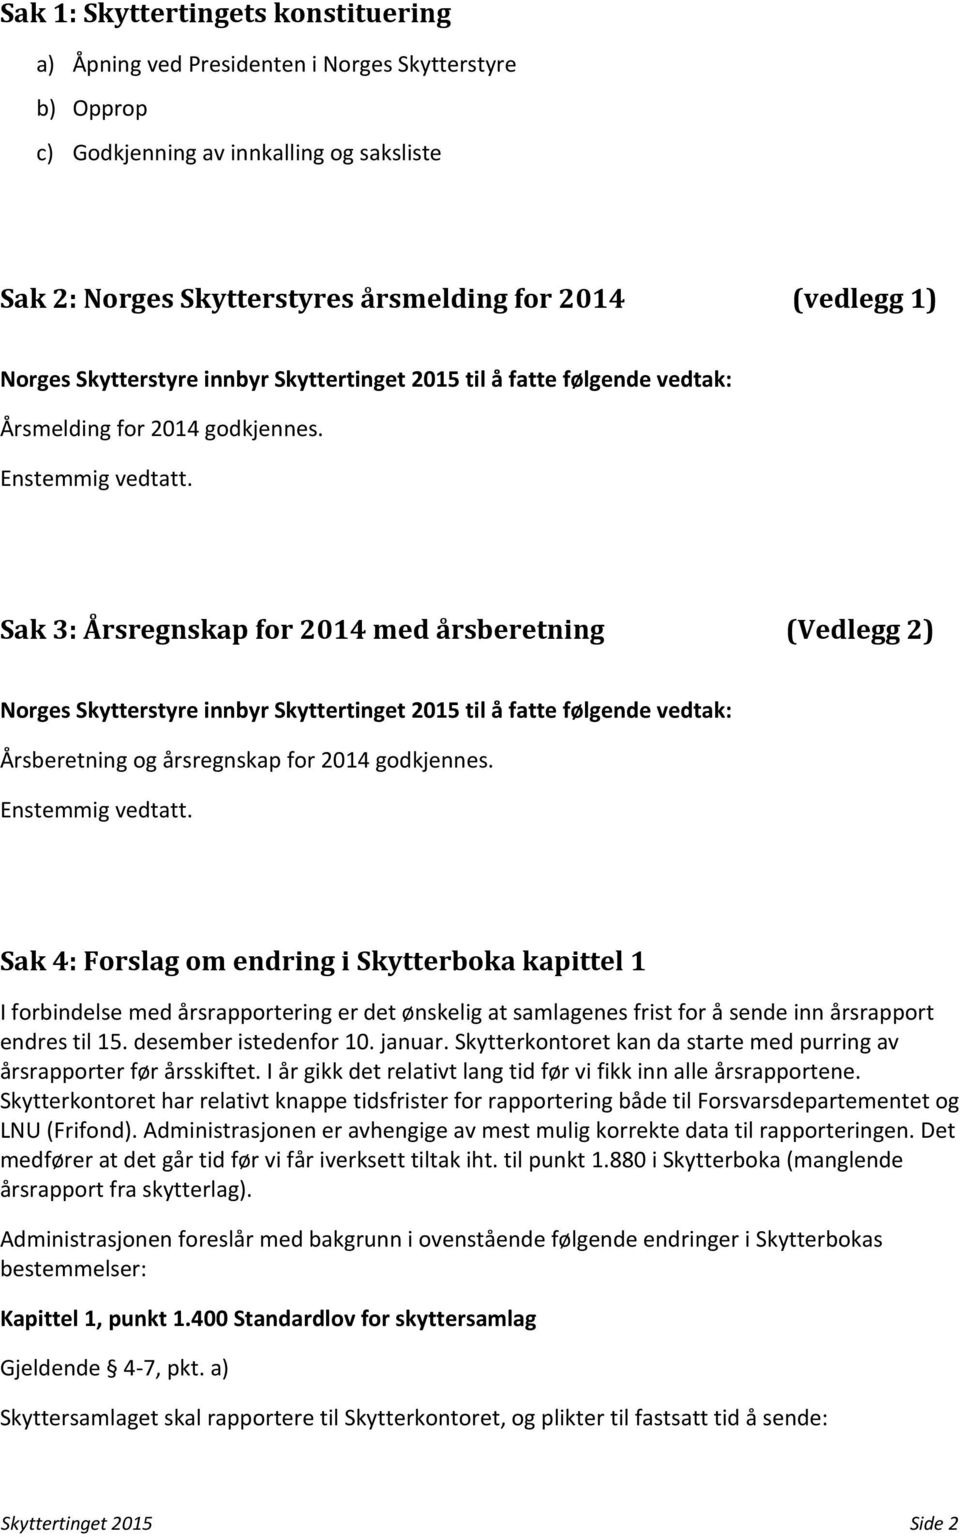 Sak 3: Årsregnskap for 2014 med årsberetning (Vedlegg 2) Norges Skytterstyre innbyr Skyttertinget 2015 til å fatte følgende vedtak: Årsberetning og årsregnskap for 2014 godkjennes. Enstemmig vedtatt.